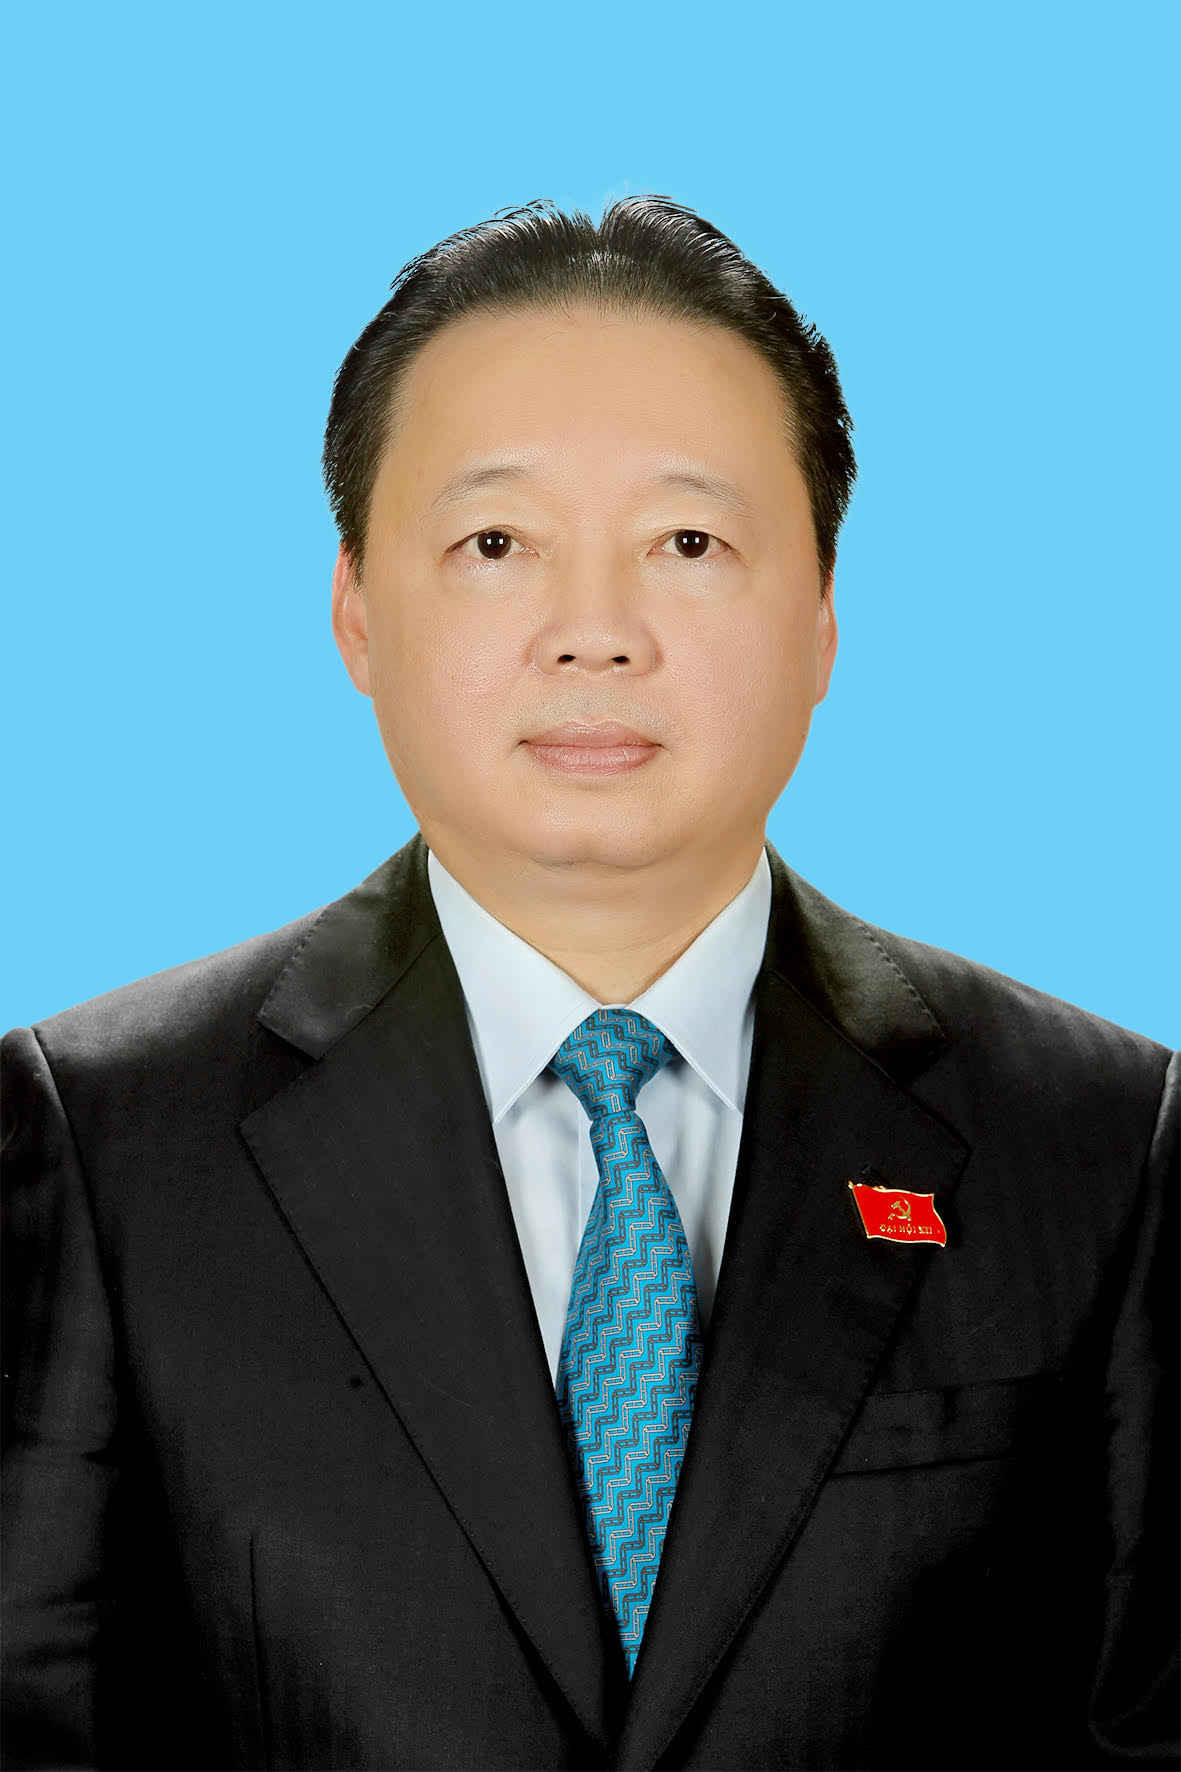 Sáng 09/4, Quốc hội khóa XIII đã chính thức bầu và phê chuẩn đồng chí Trần Hồng Hà giữ chức vụ  Bộ trưởng Bộ Tài nguyên và Môi trường 